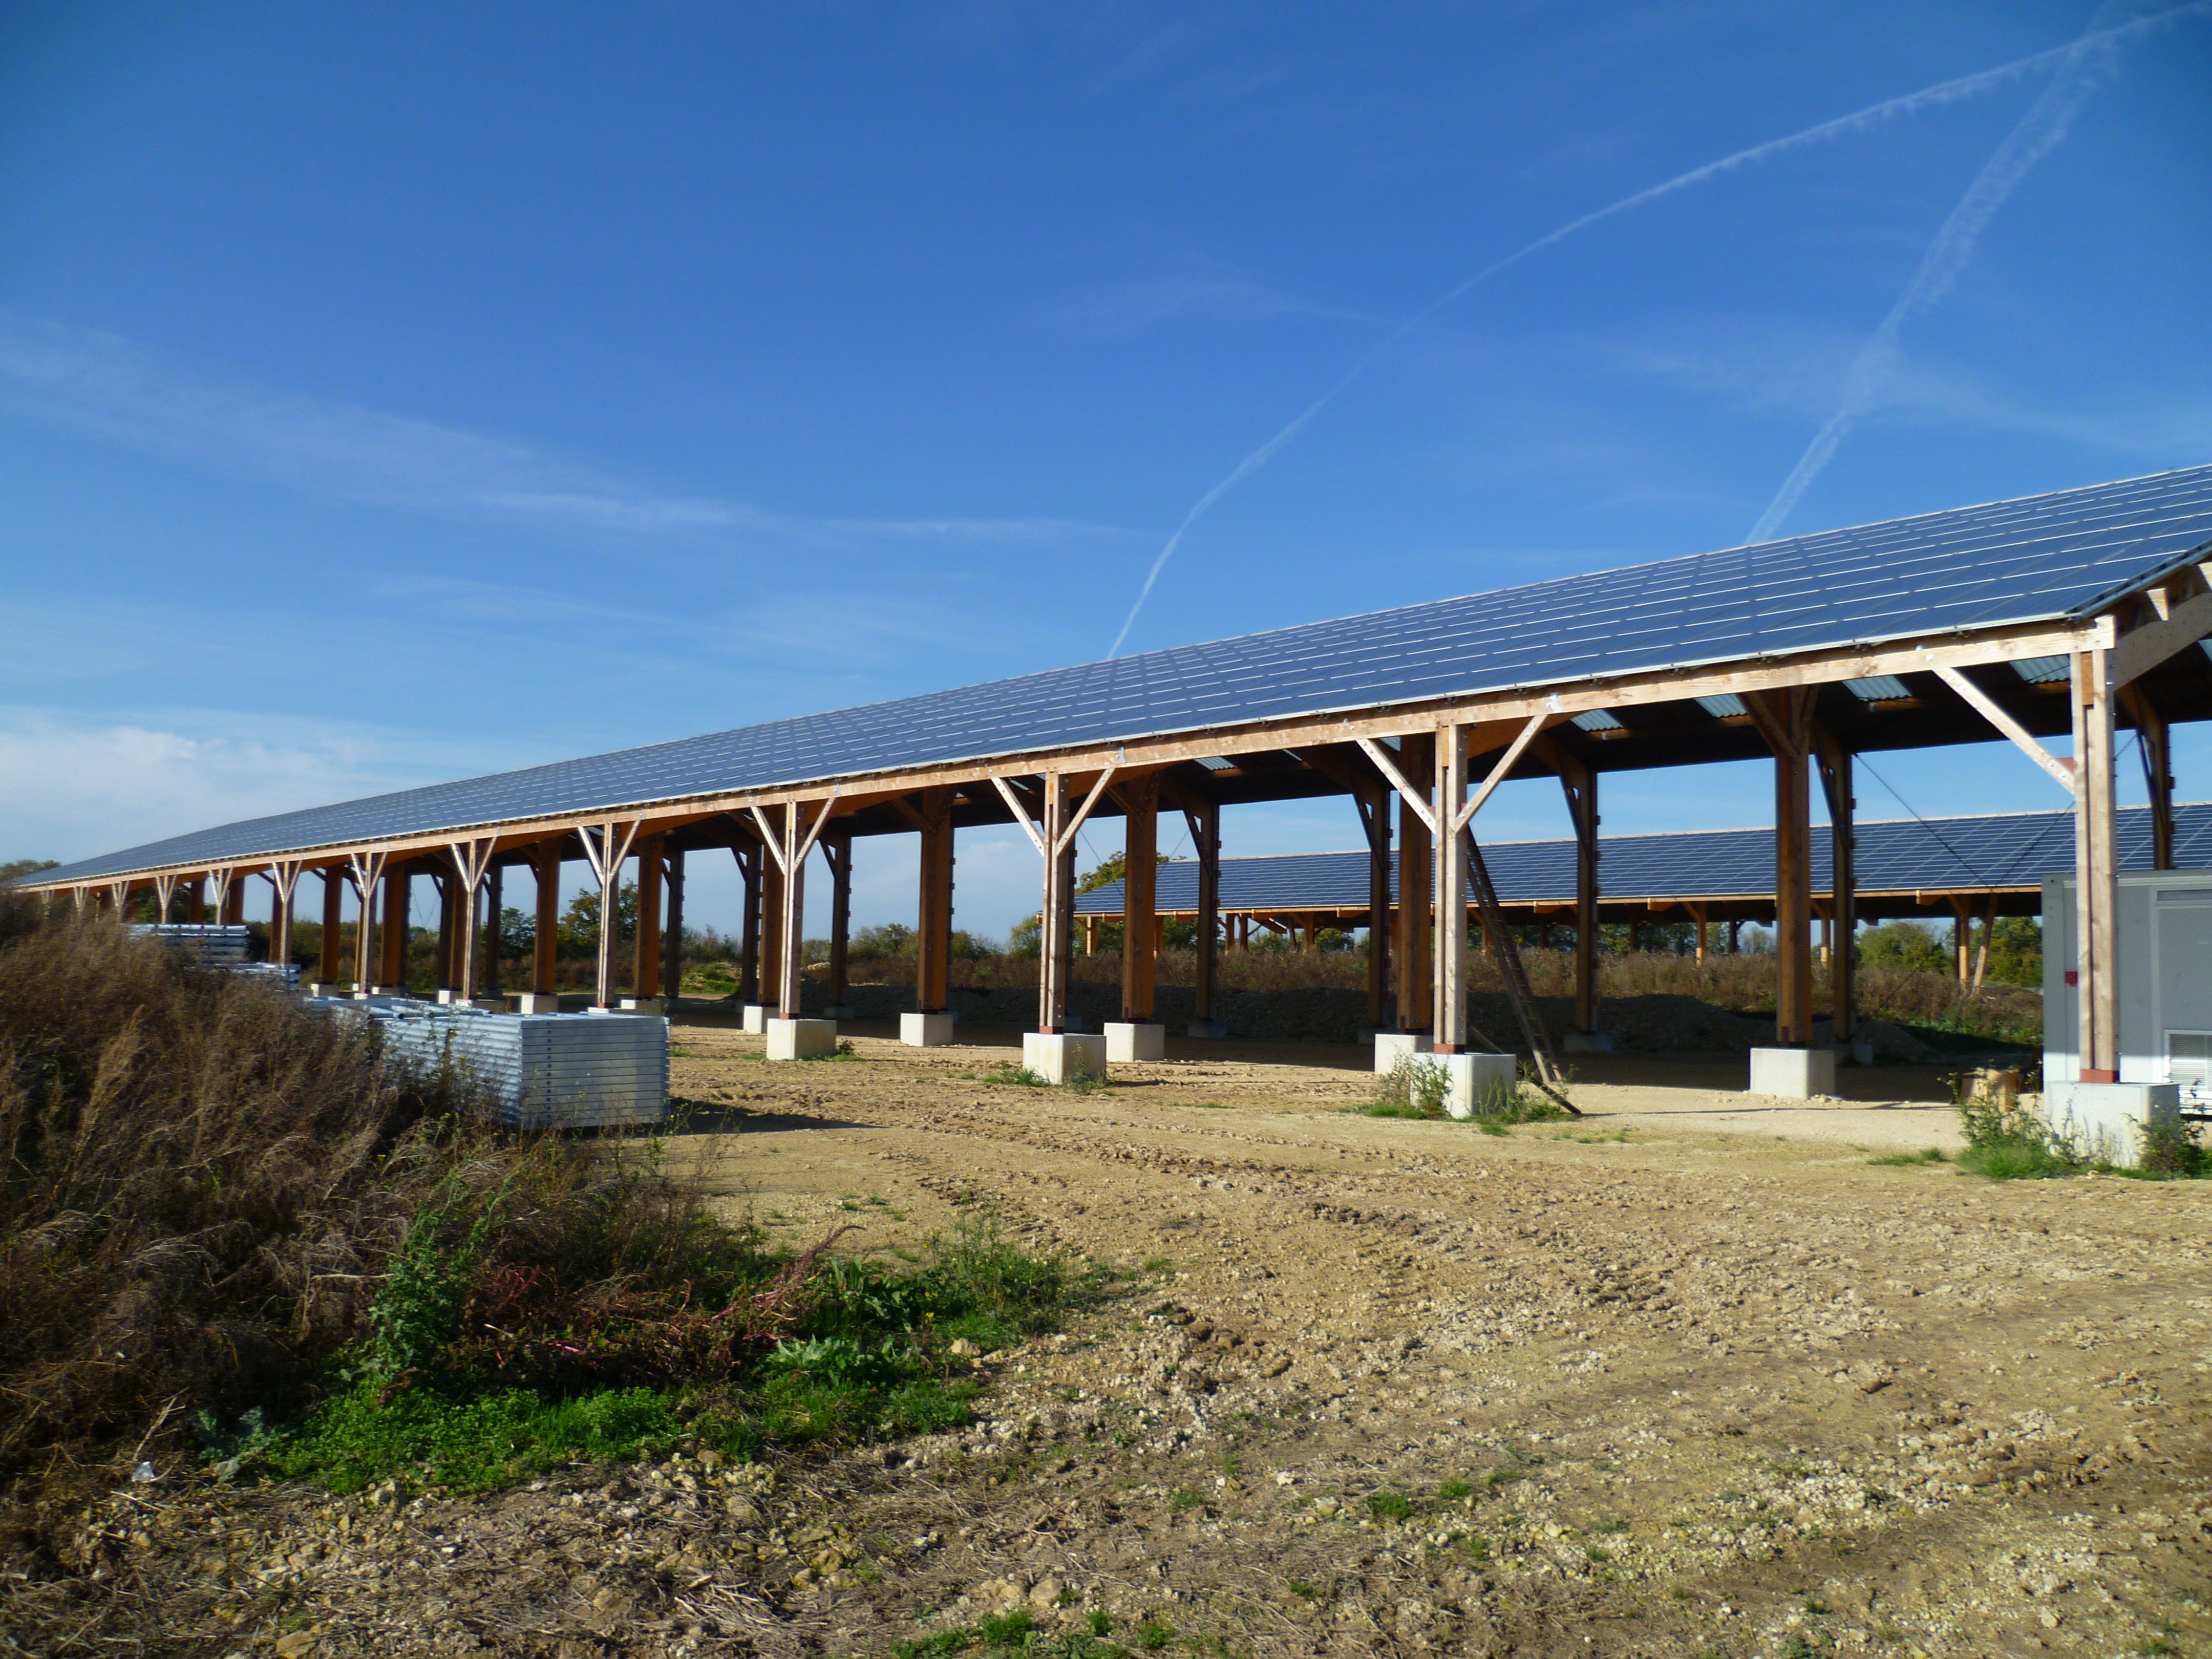 Structure sur-élevées de type bangar ou grange dont les toits sont recouverts de panneaux photovoltaïques.